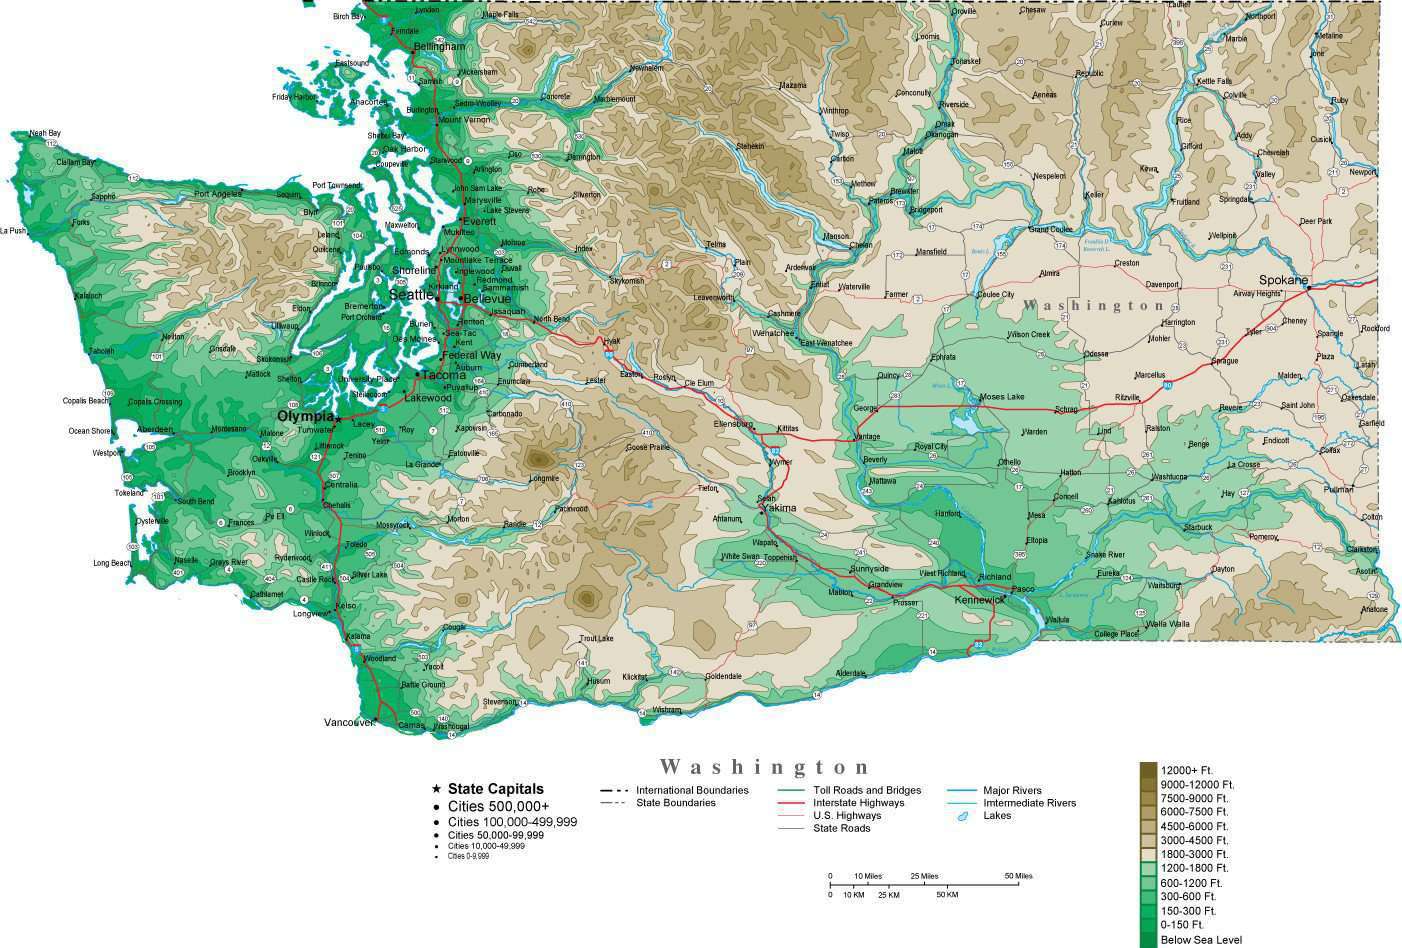 Washington State Analyses — The Washington MAT Map